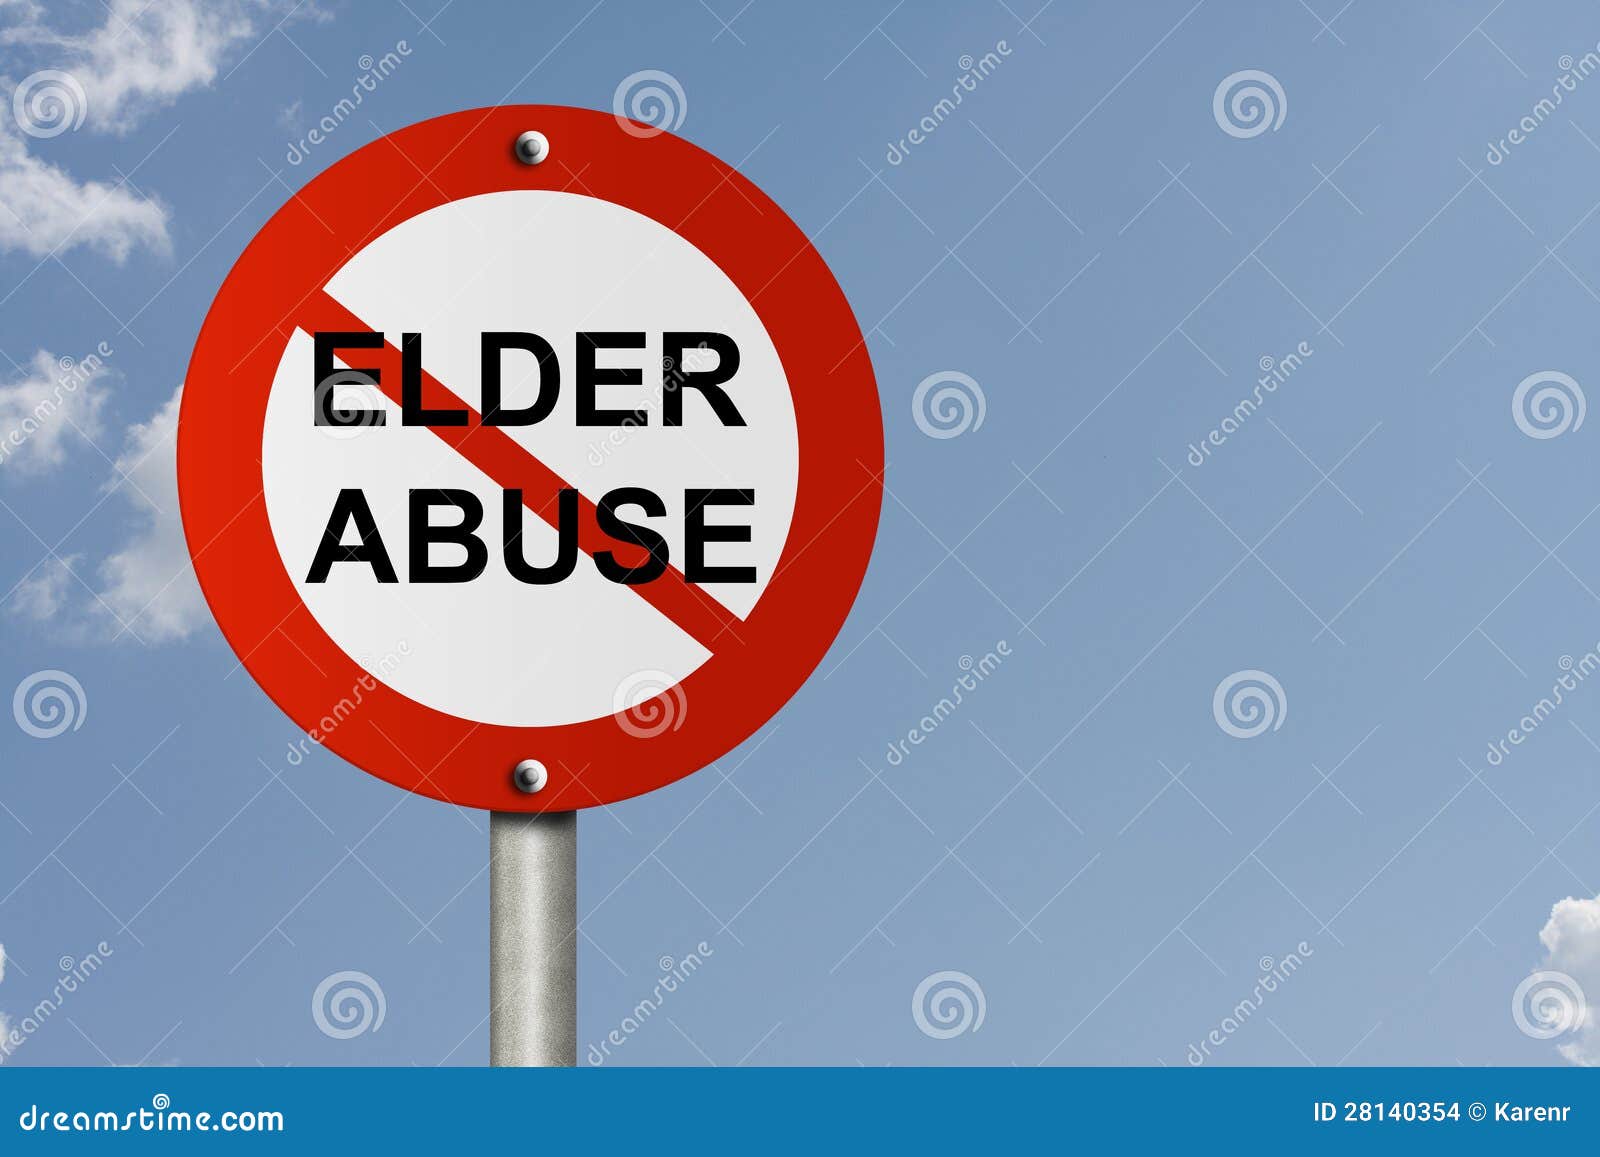 stop elder abuse sign